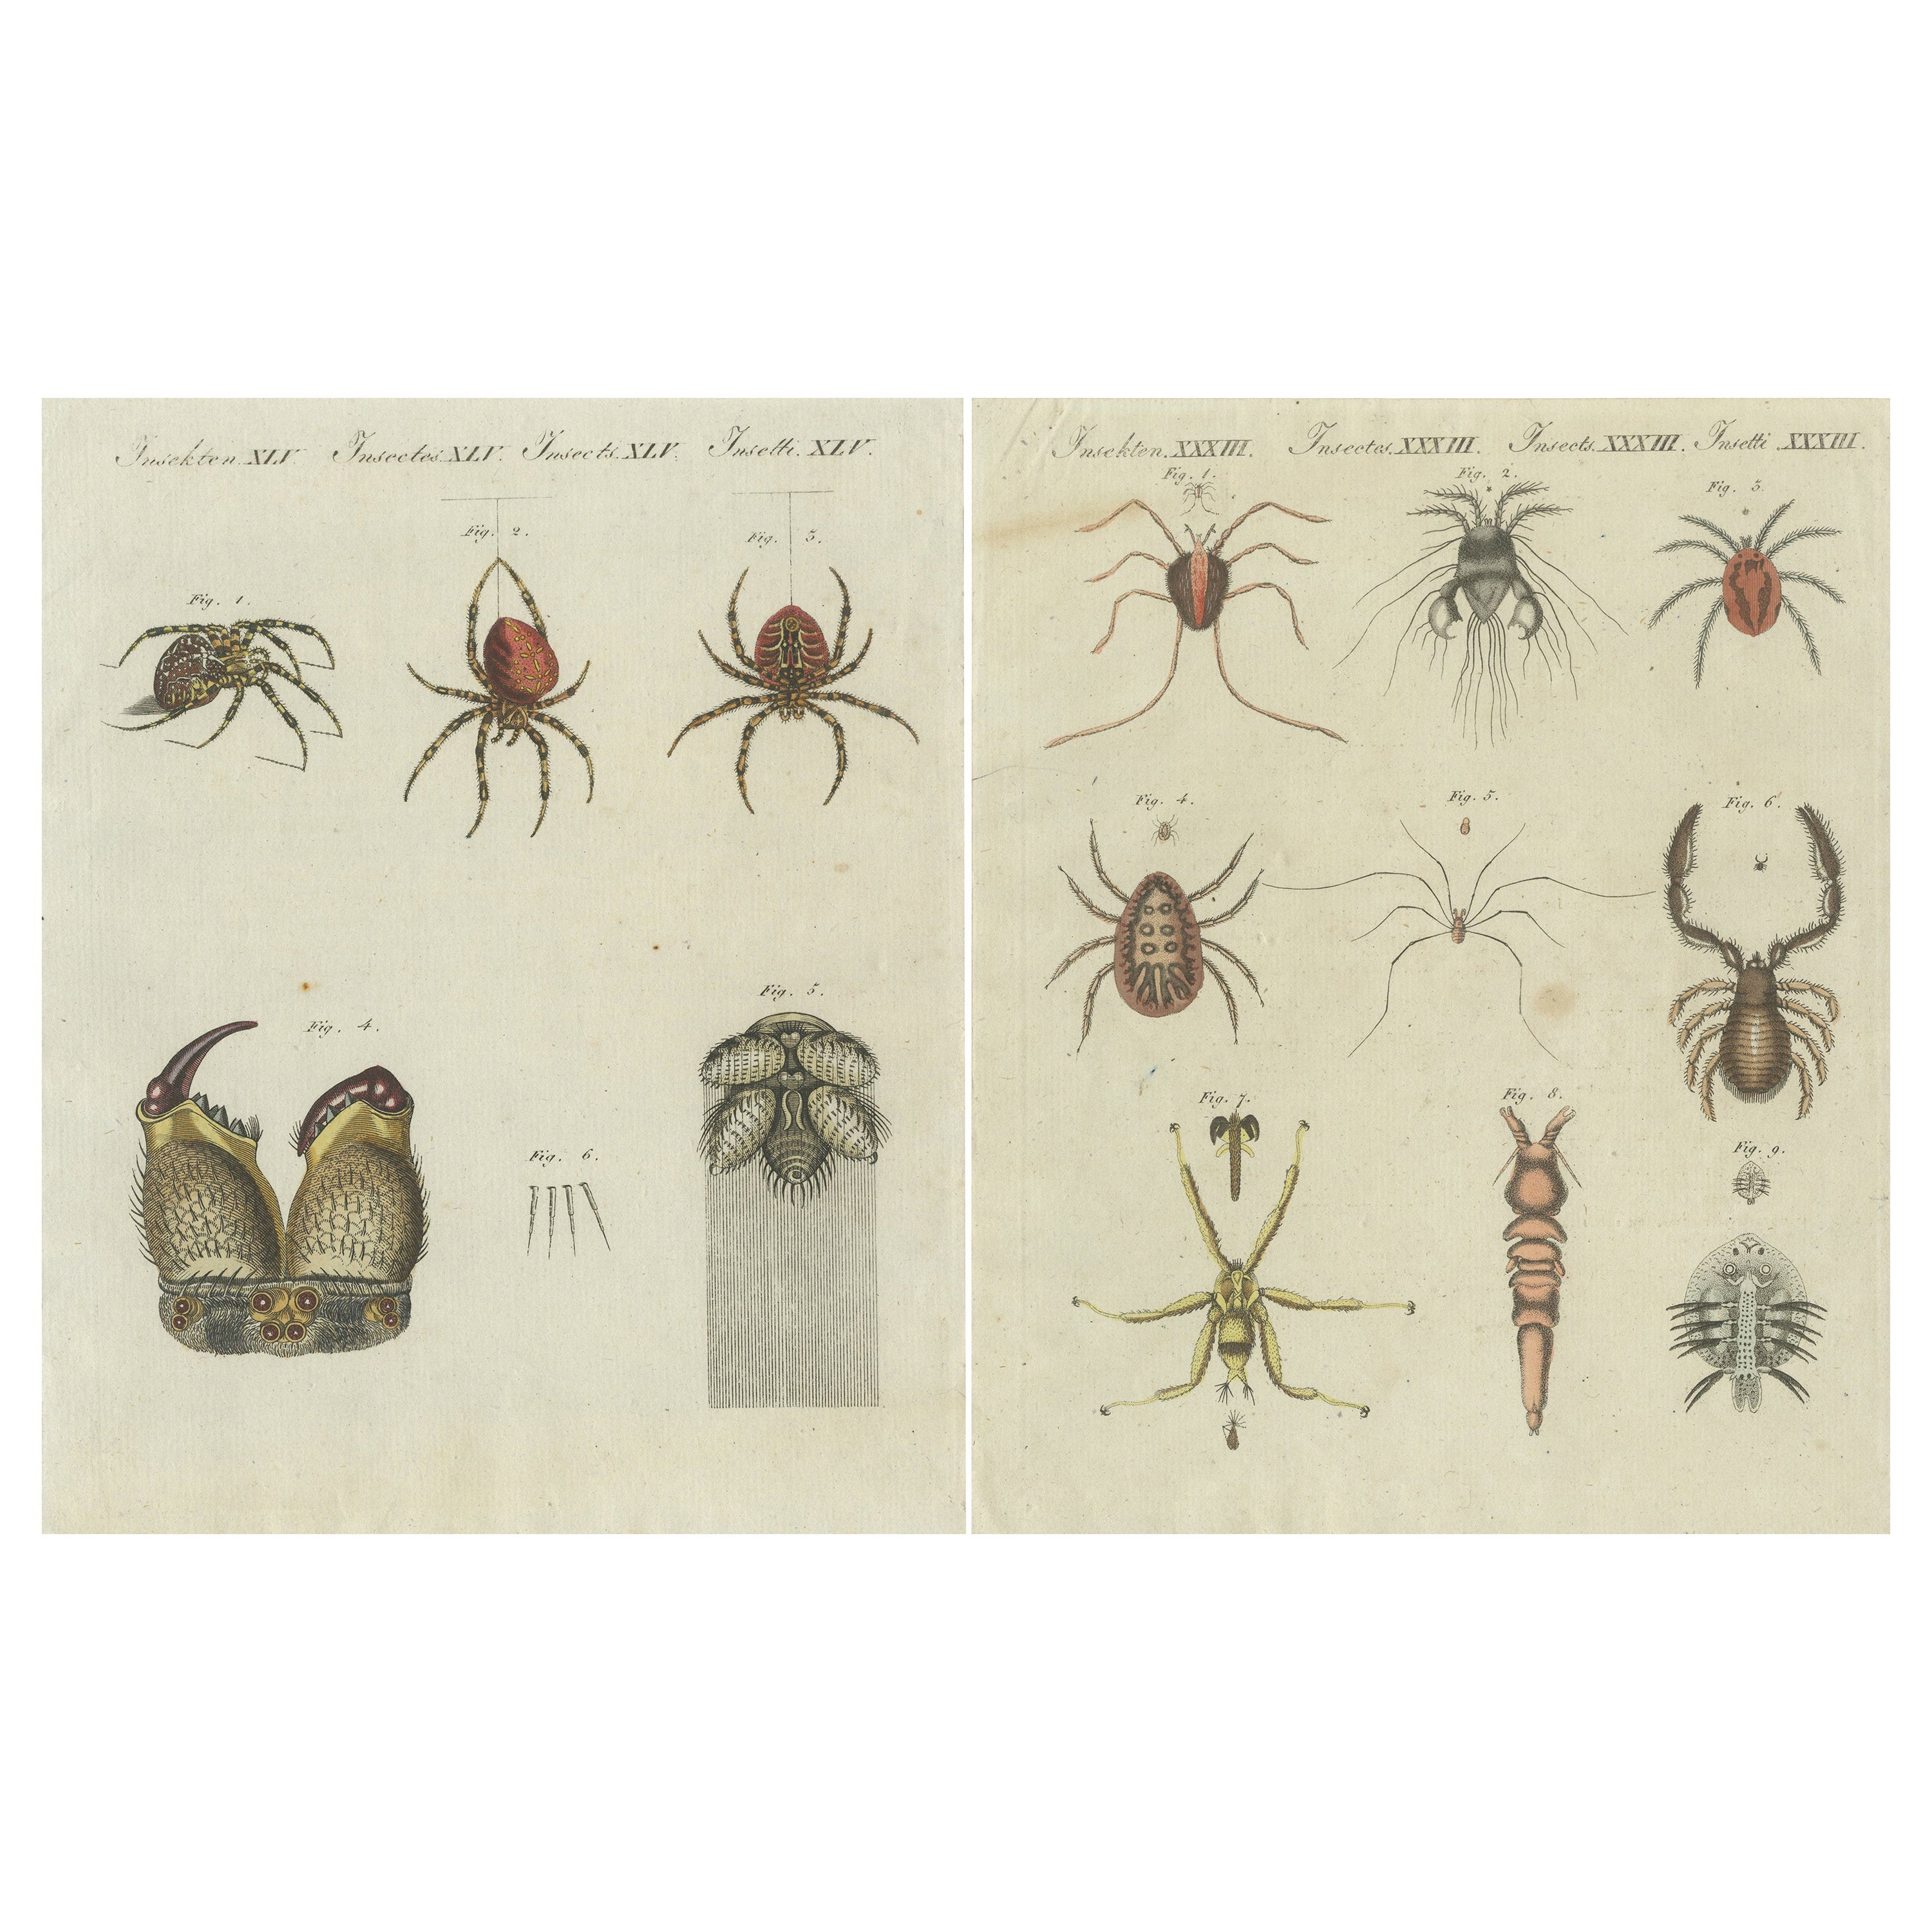 Ensemble de deux estampes anciennes de divers insectes, dont des araignées et des mites